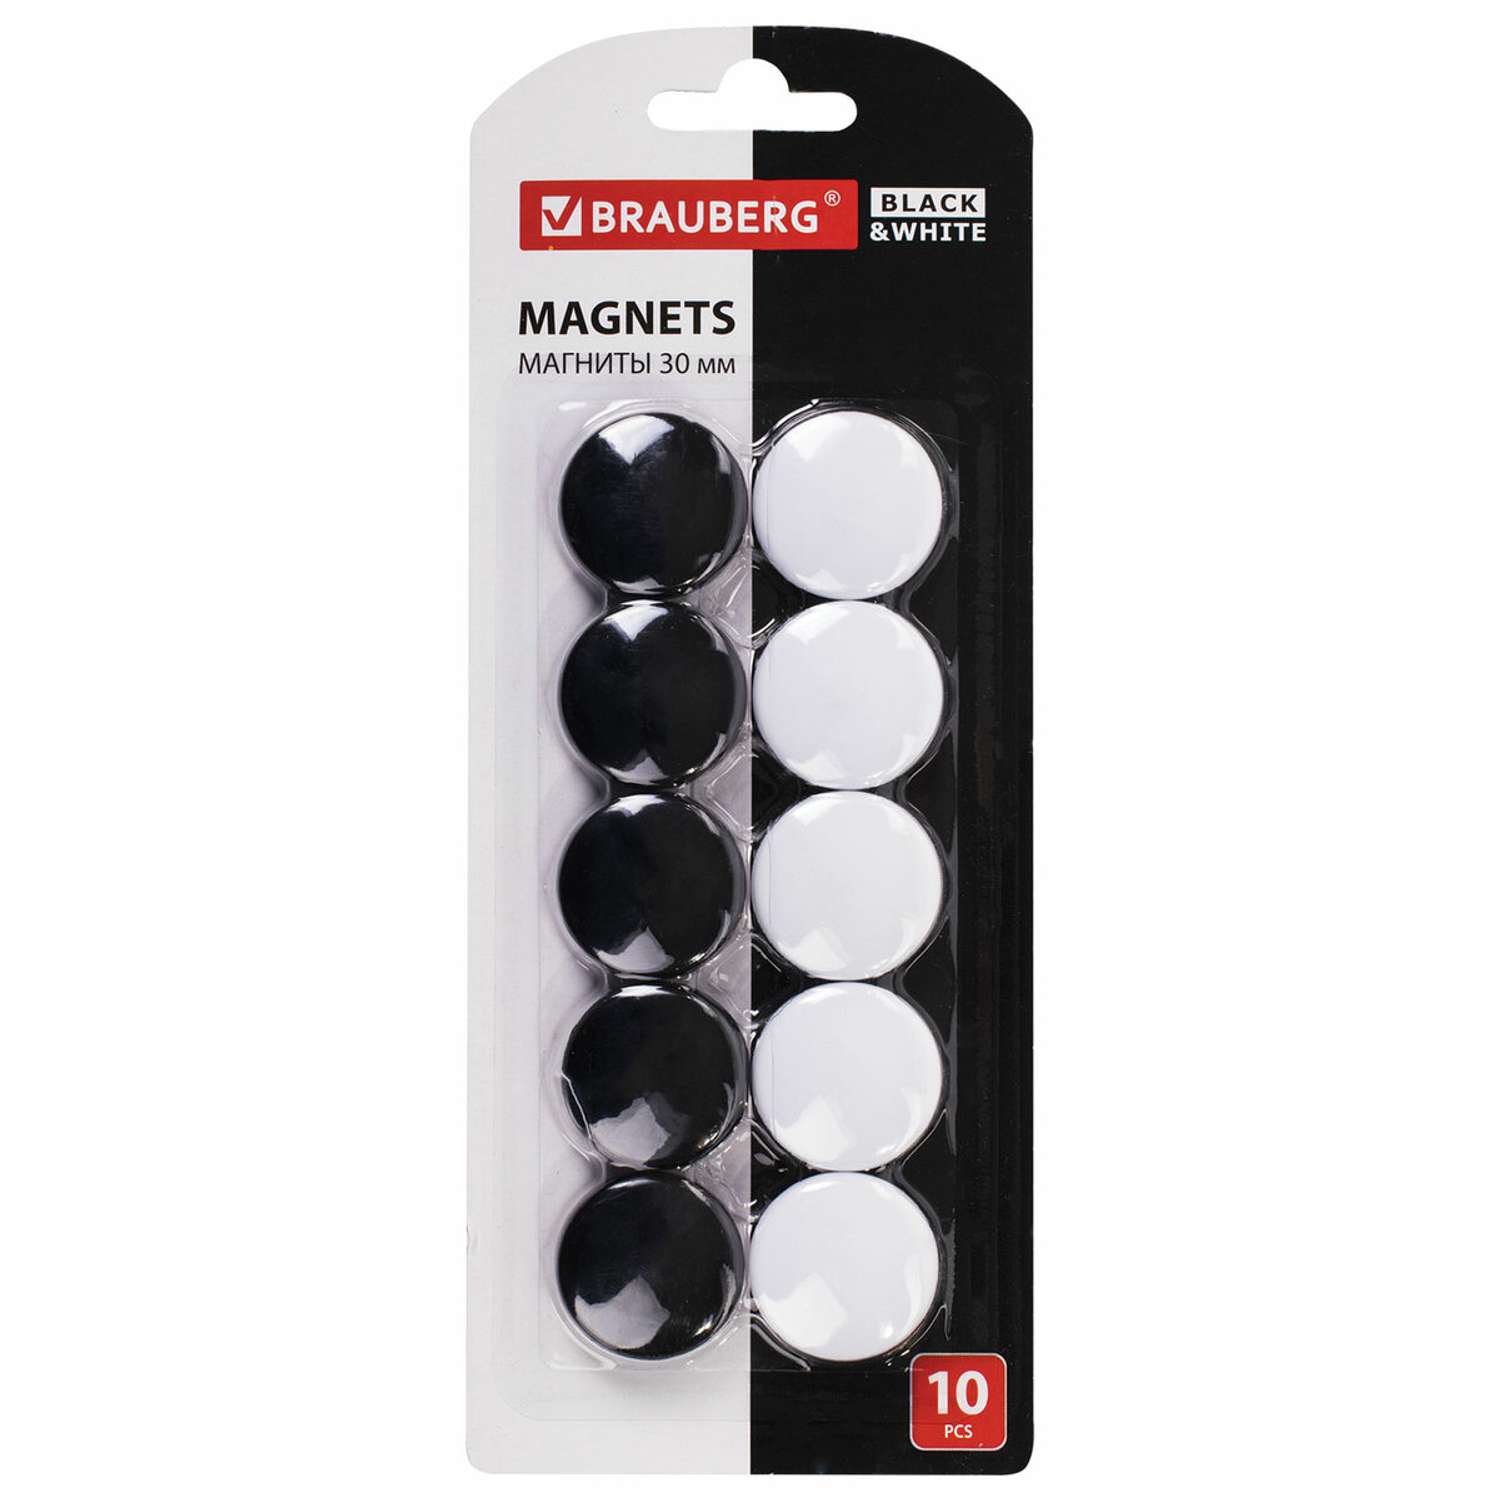 Магниты канцелярские Brauberg для магнитной доски набор 10 штук черные/белые - фото 1